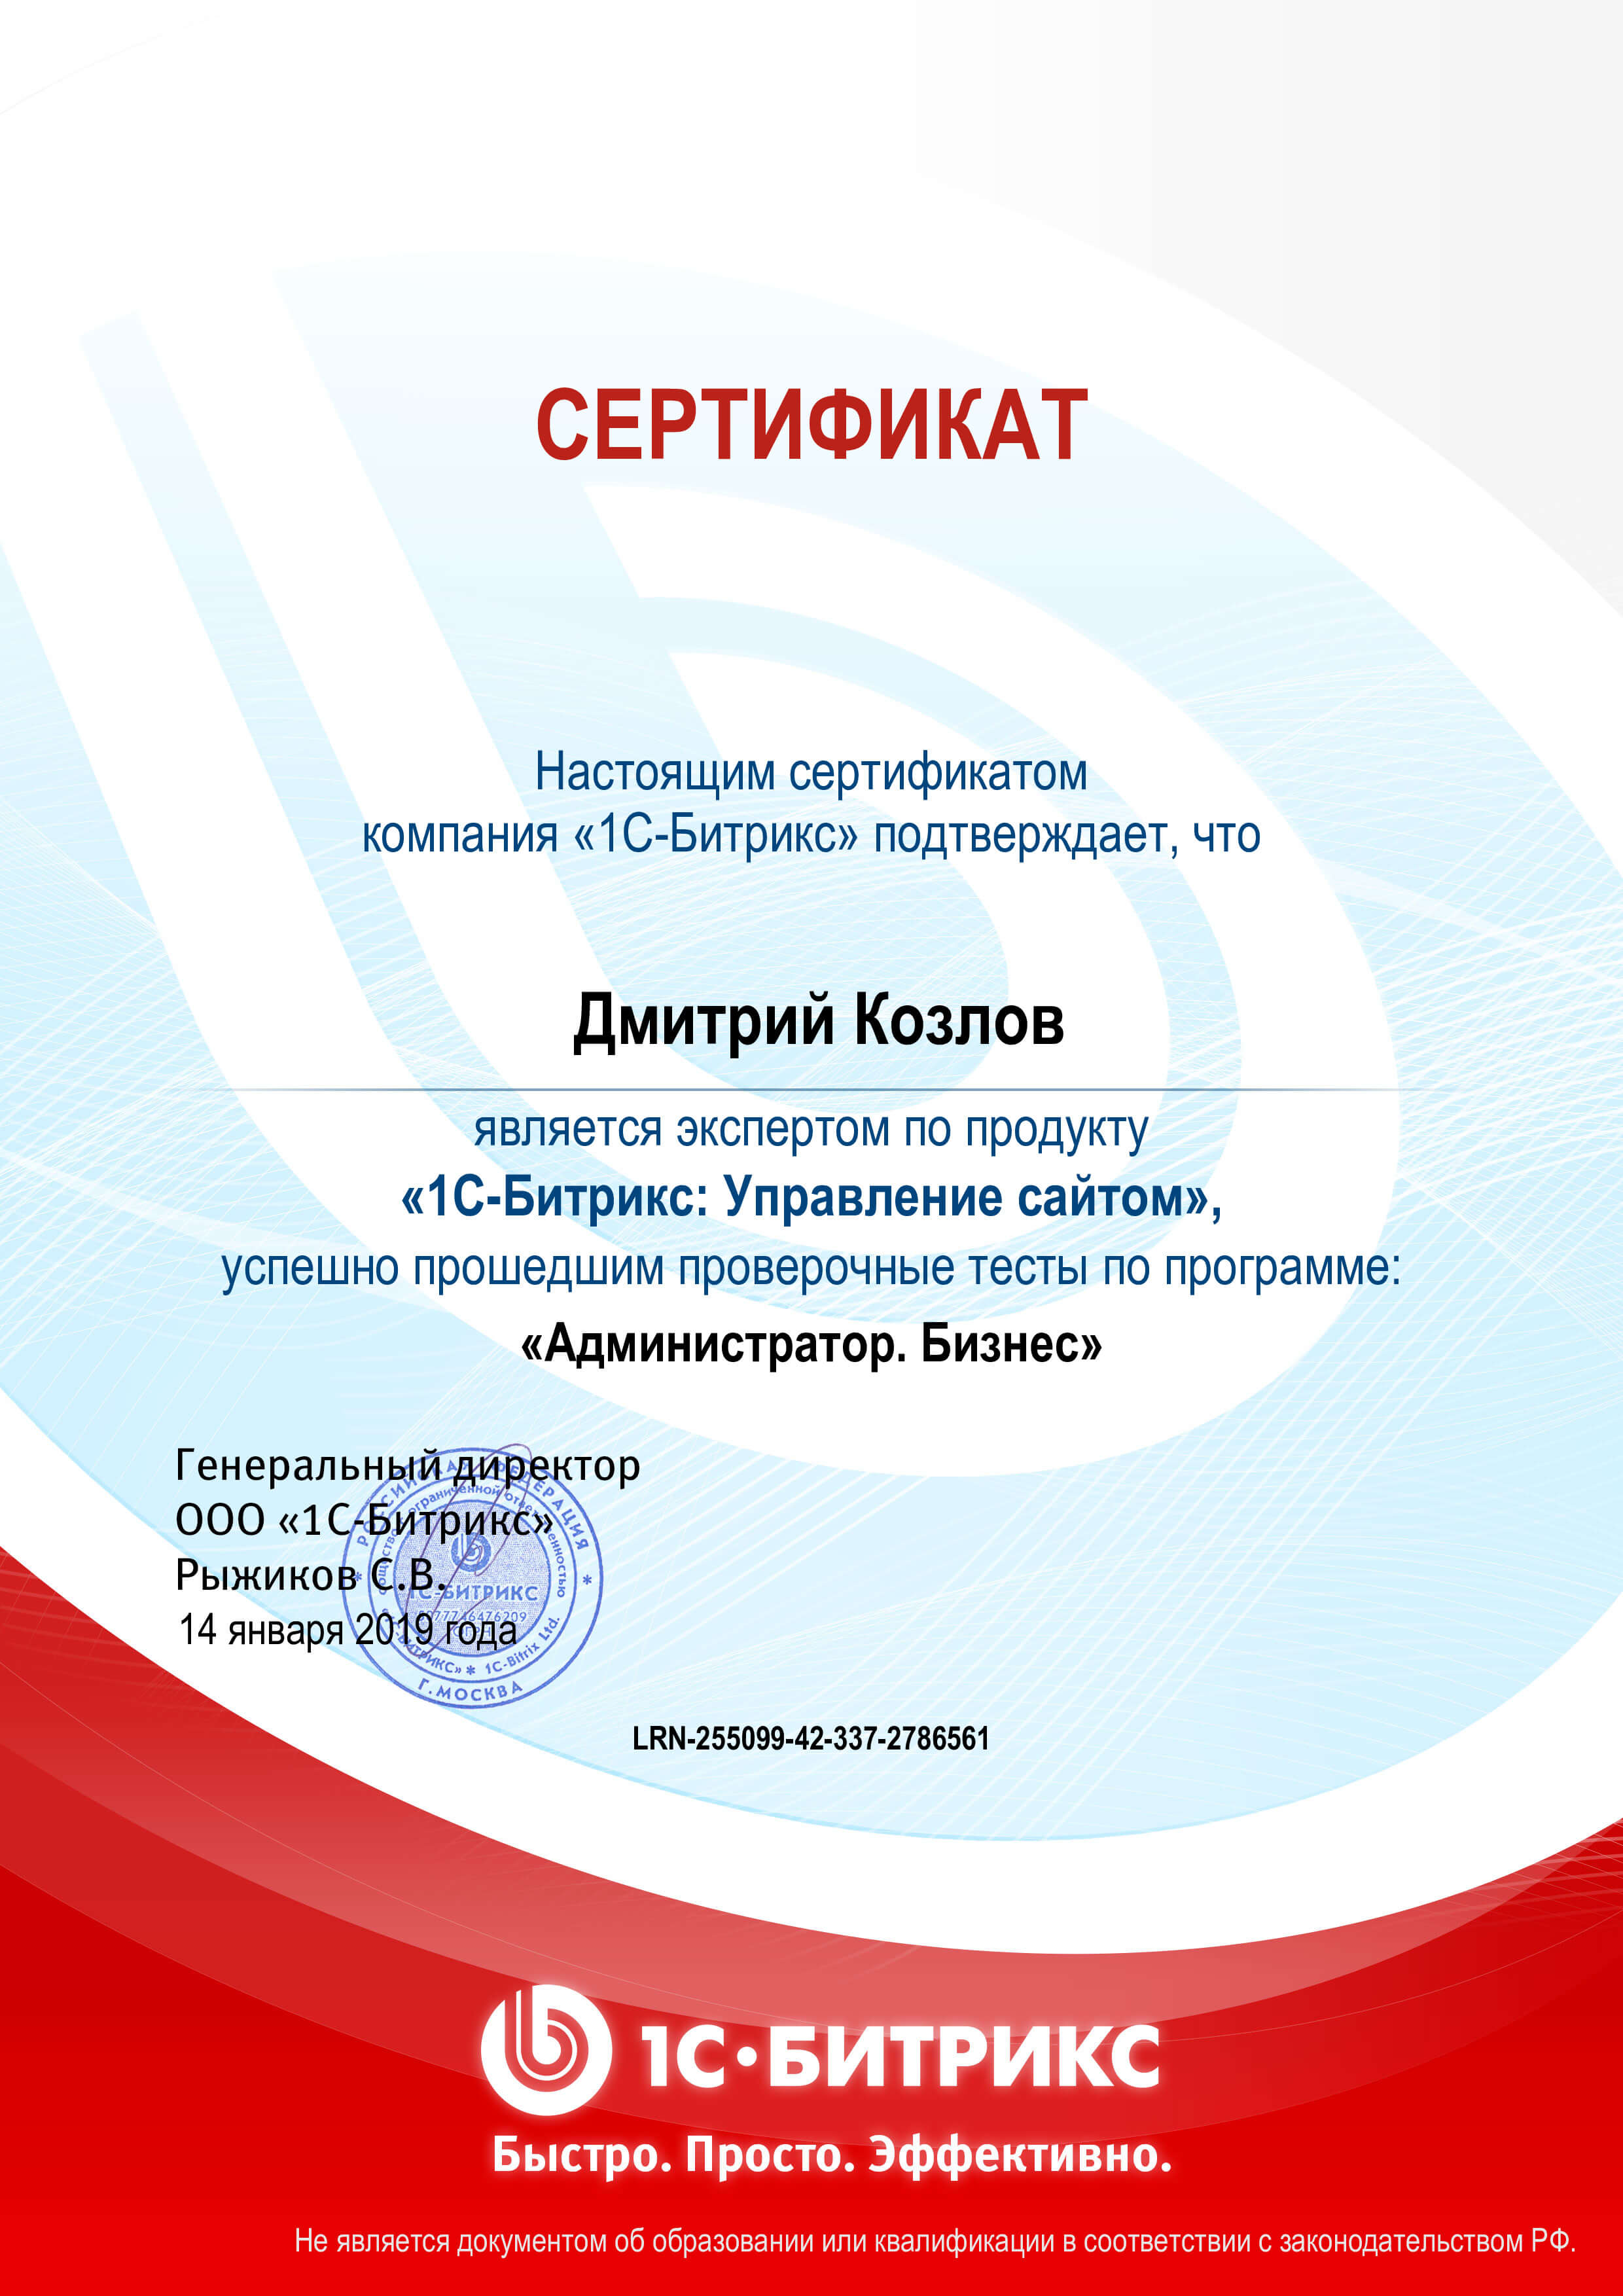 Сертификат “Администратор сайтов 1С-Битрикс”